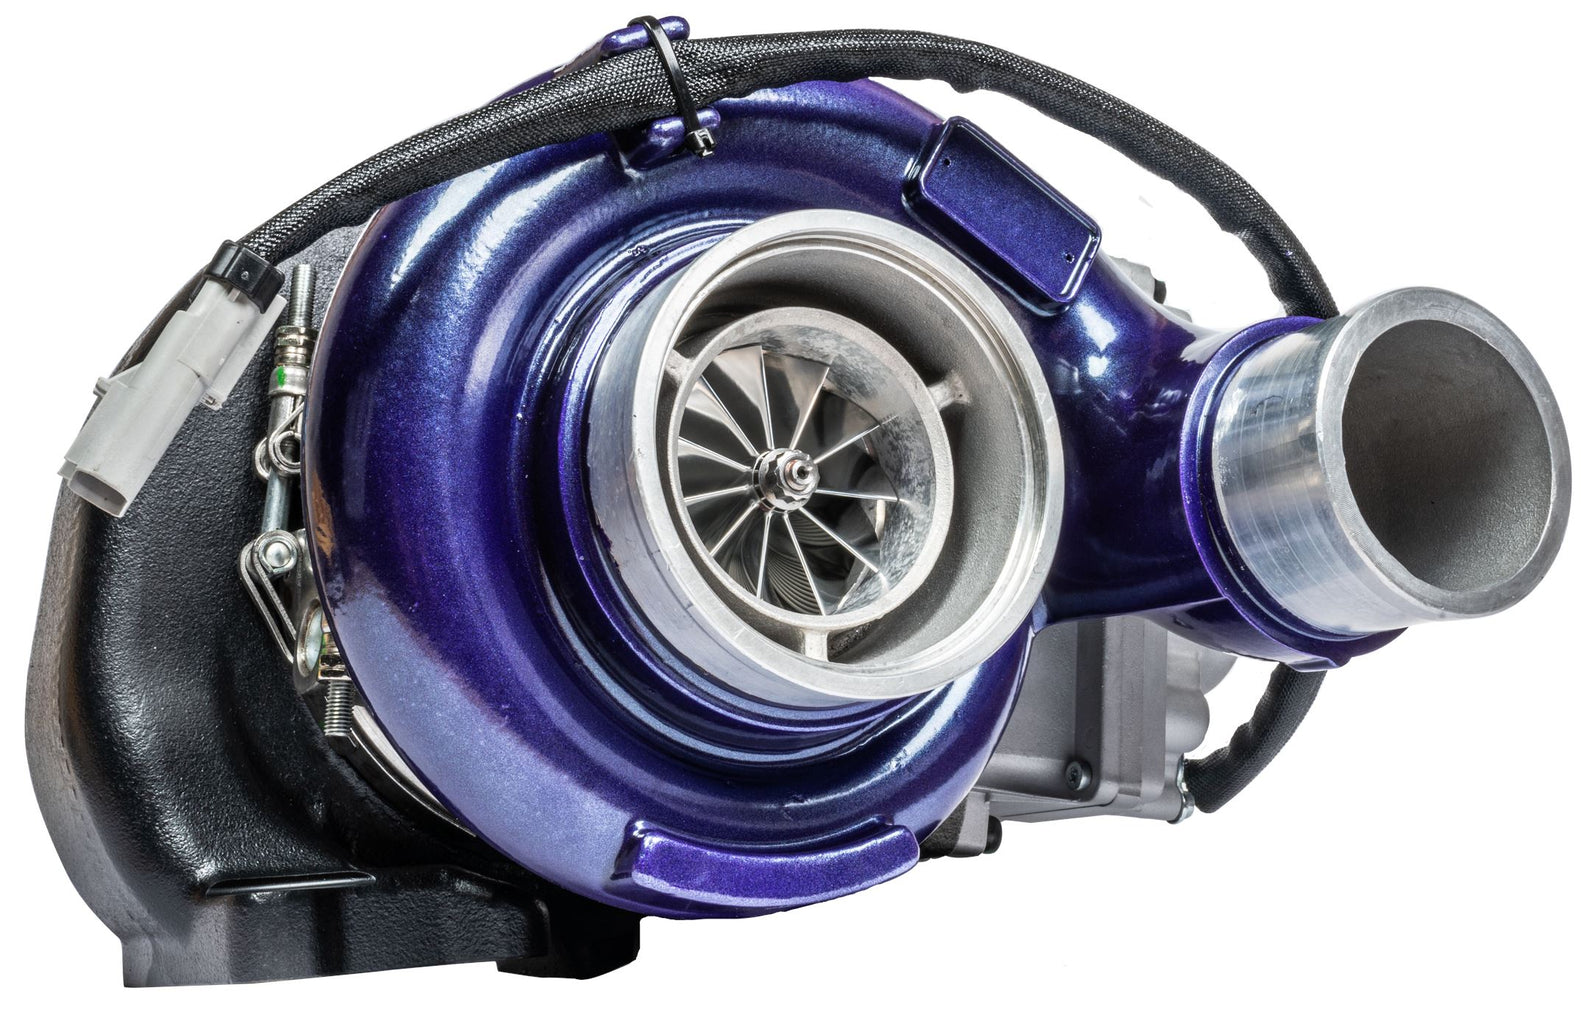 ATS Aurora 4000 Vfr Stage 2 Turbo Fits 2013-2018 6.7L Cummins Turbocharger Kit ATS Diesel Performance 